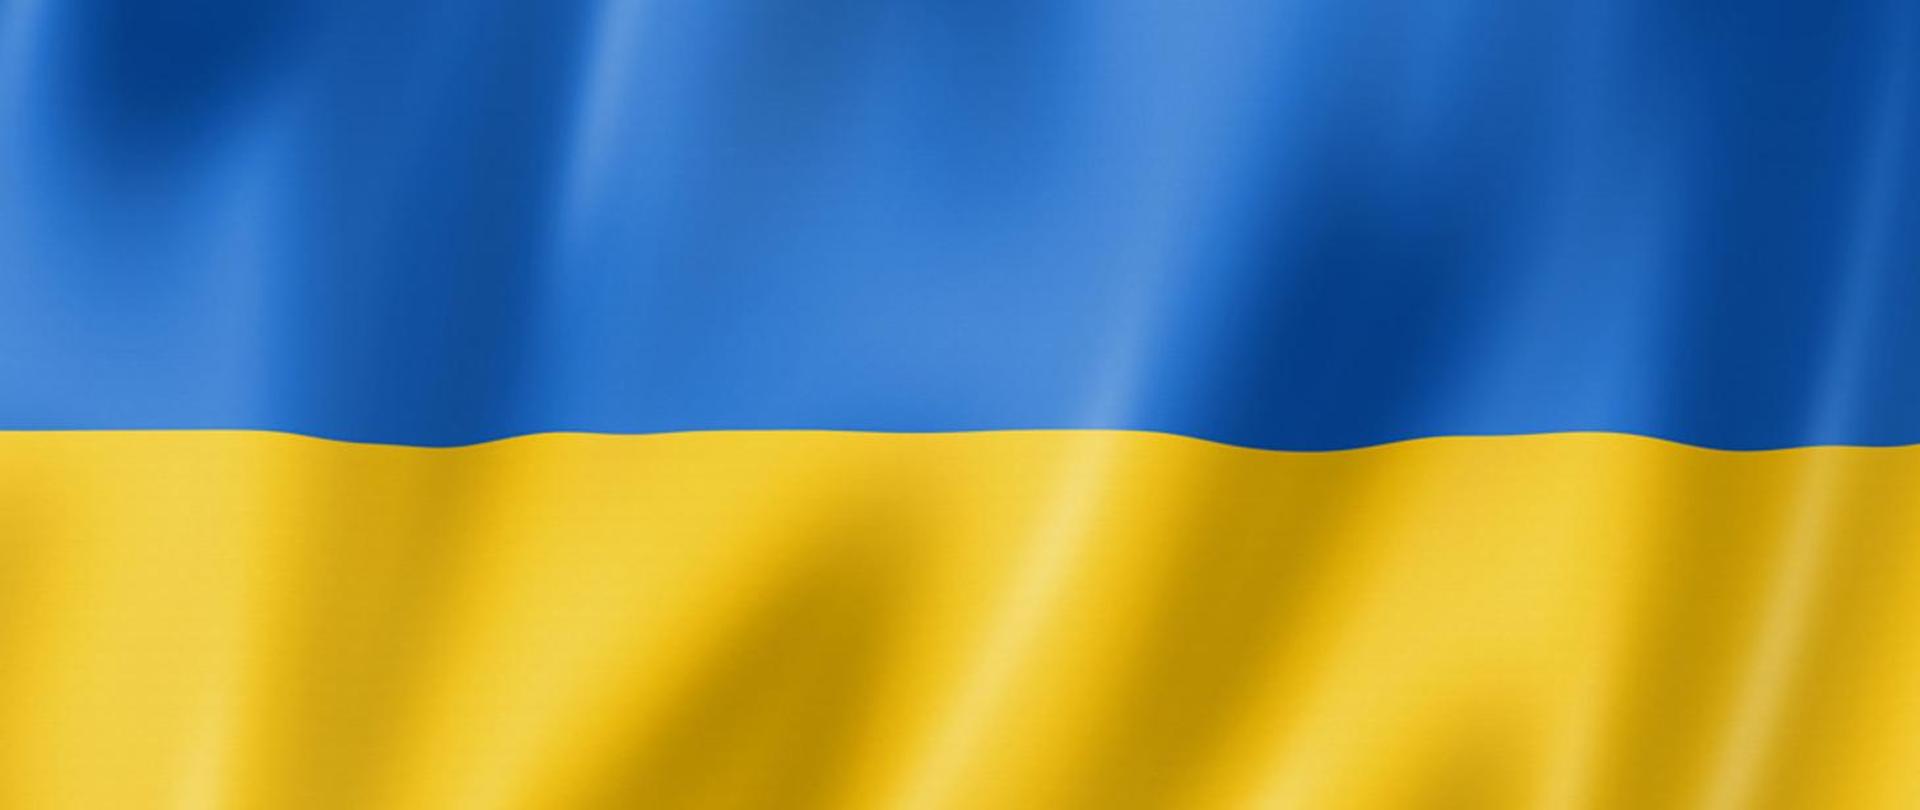 !UWAGA! #PomagamUkrainie – koordynacja pomocy humanitarnej AKTUALIZACJA